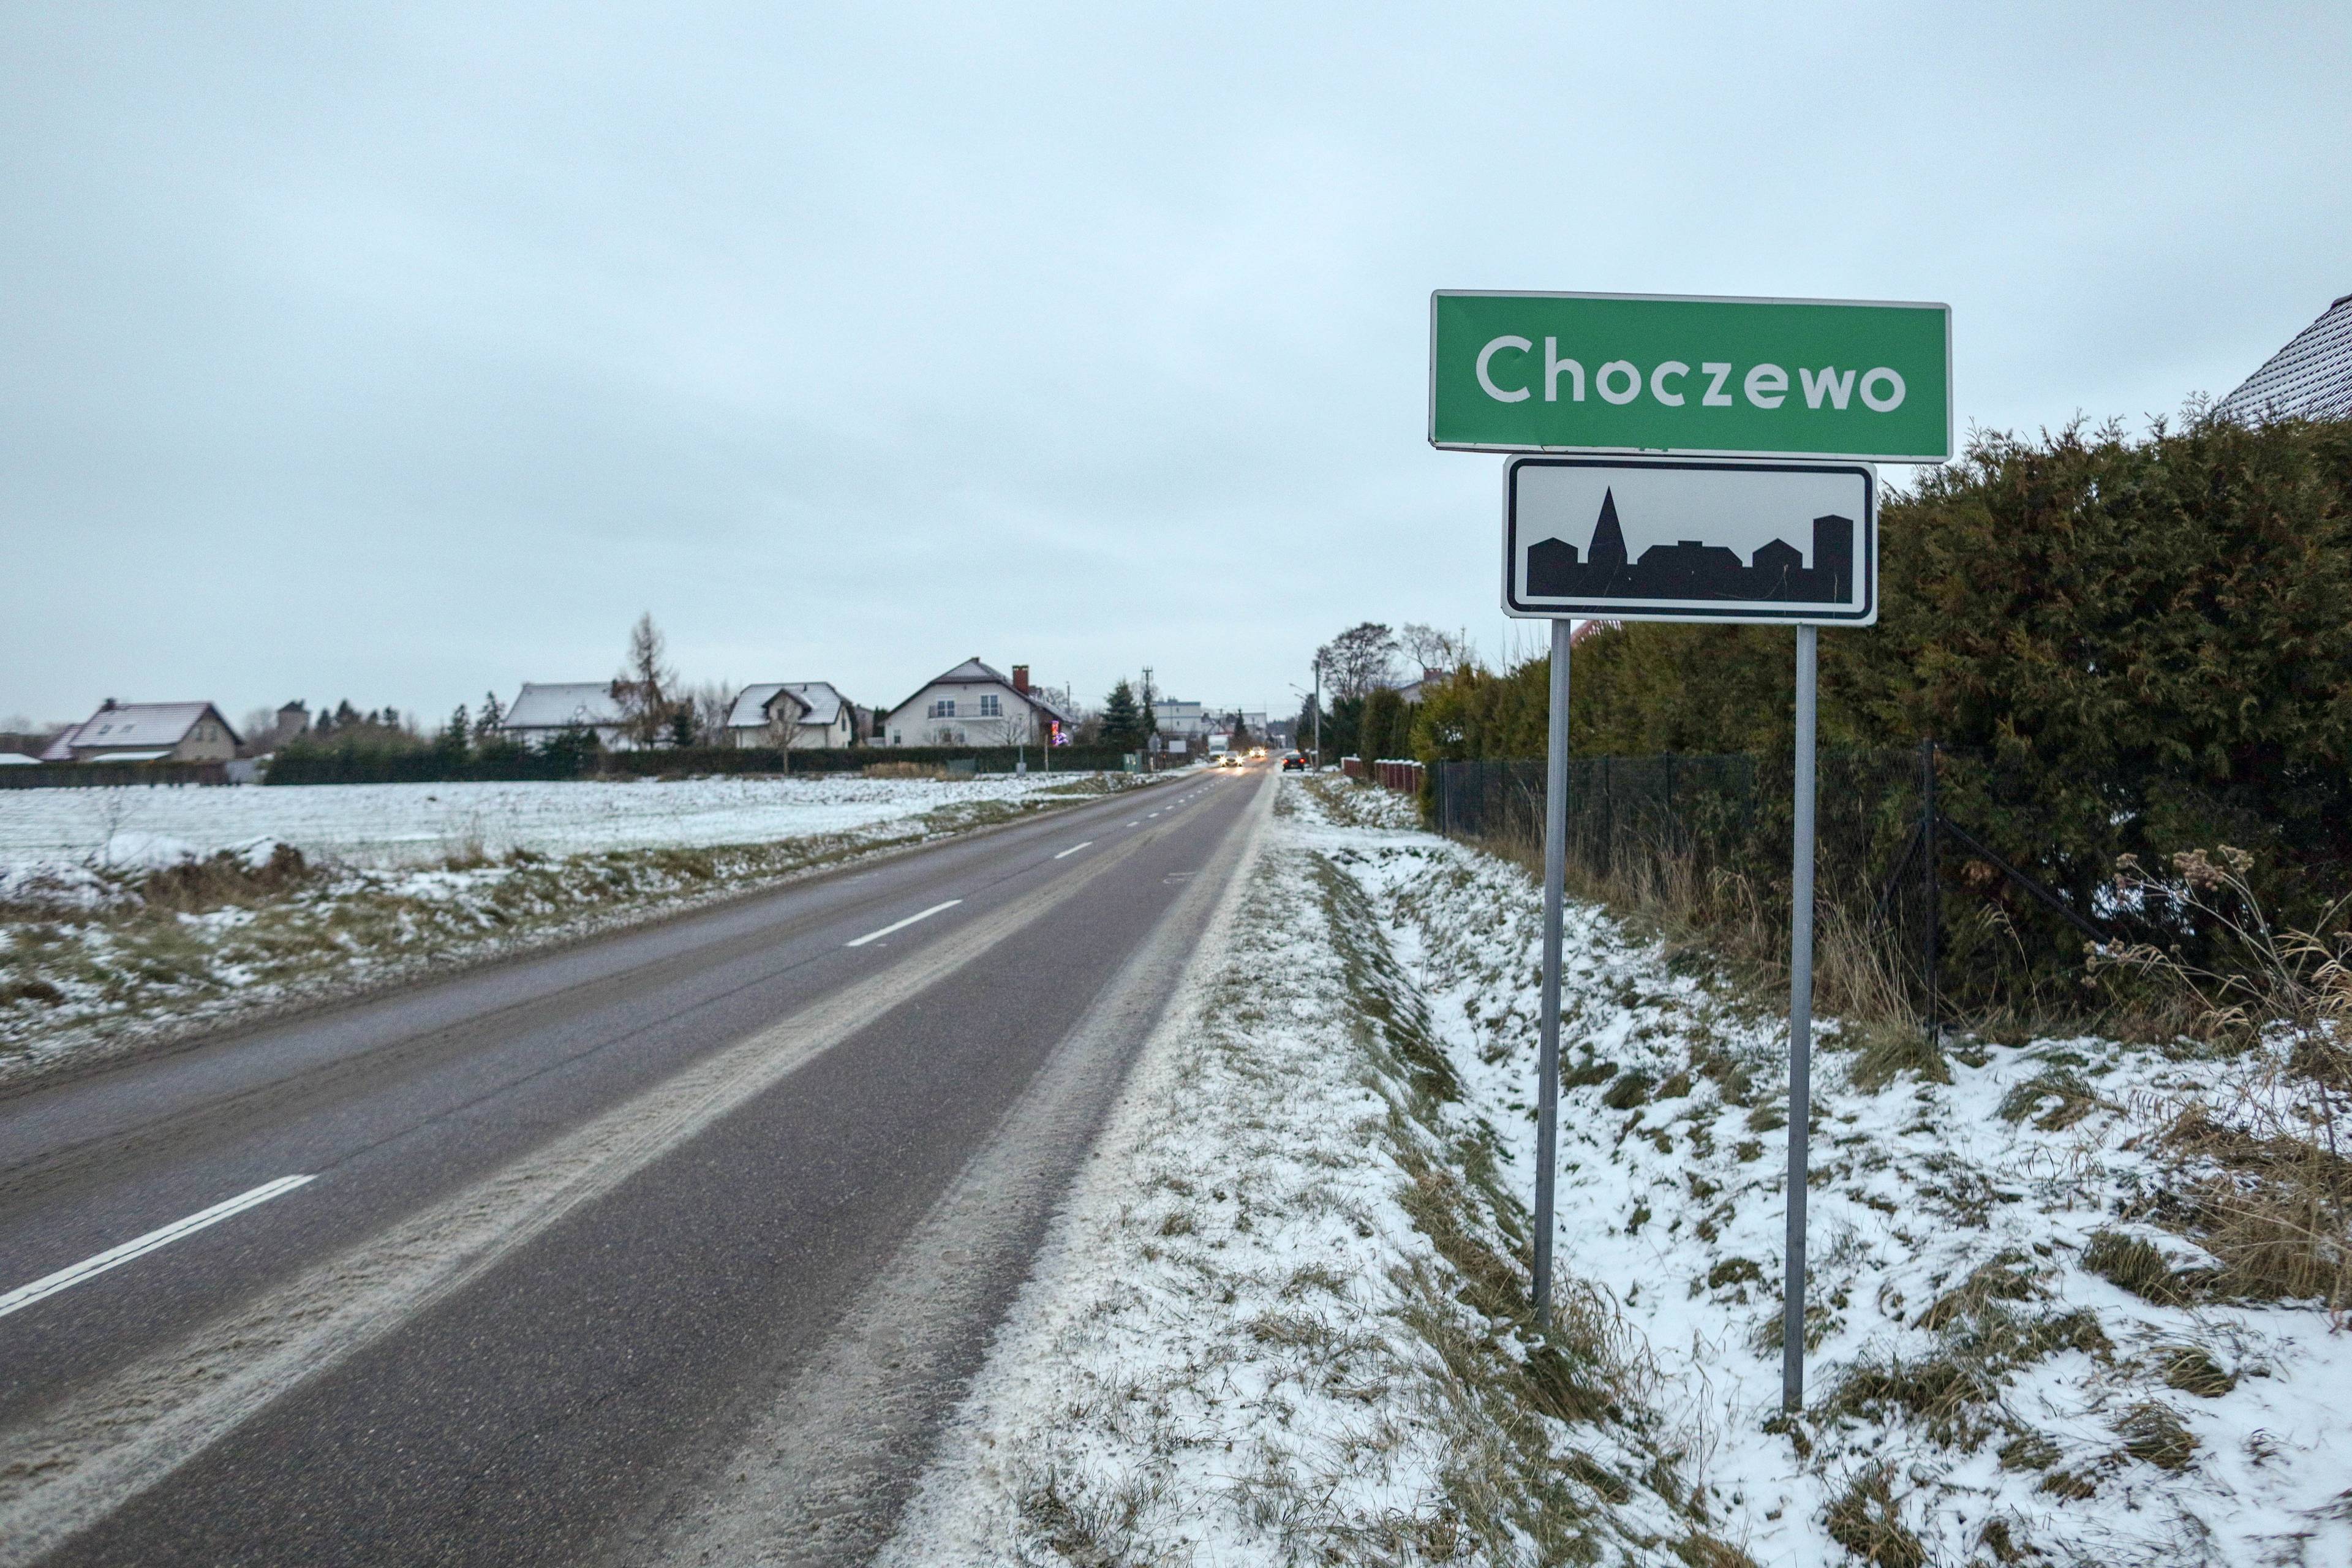 Wiejska szosa zimą. Przy niej tablica z nazwą miejscowości: Choczewo